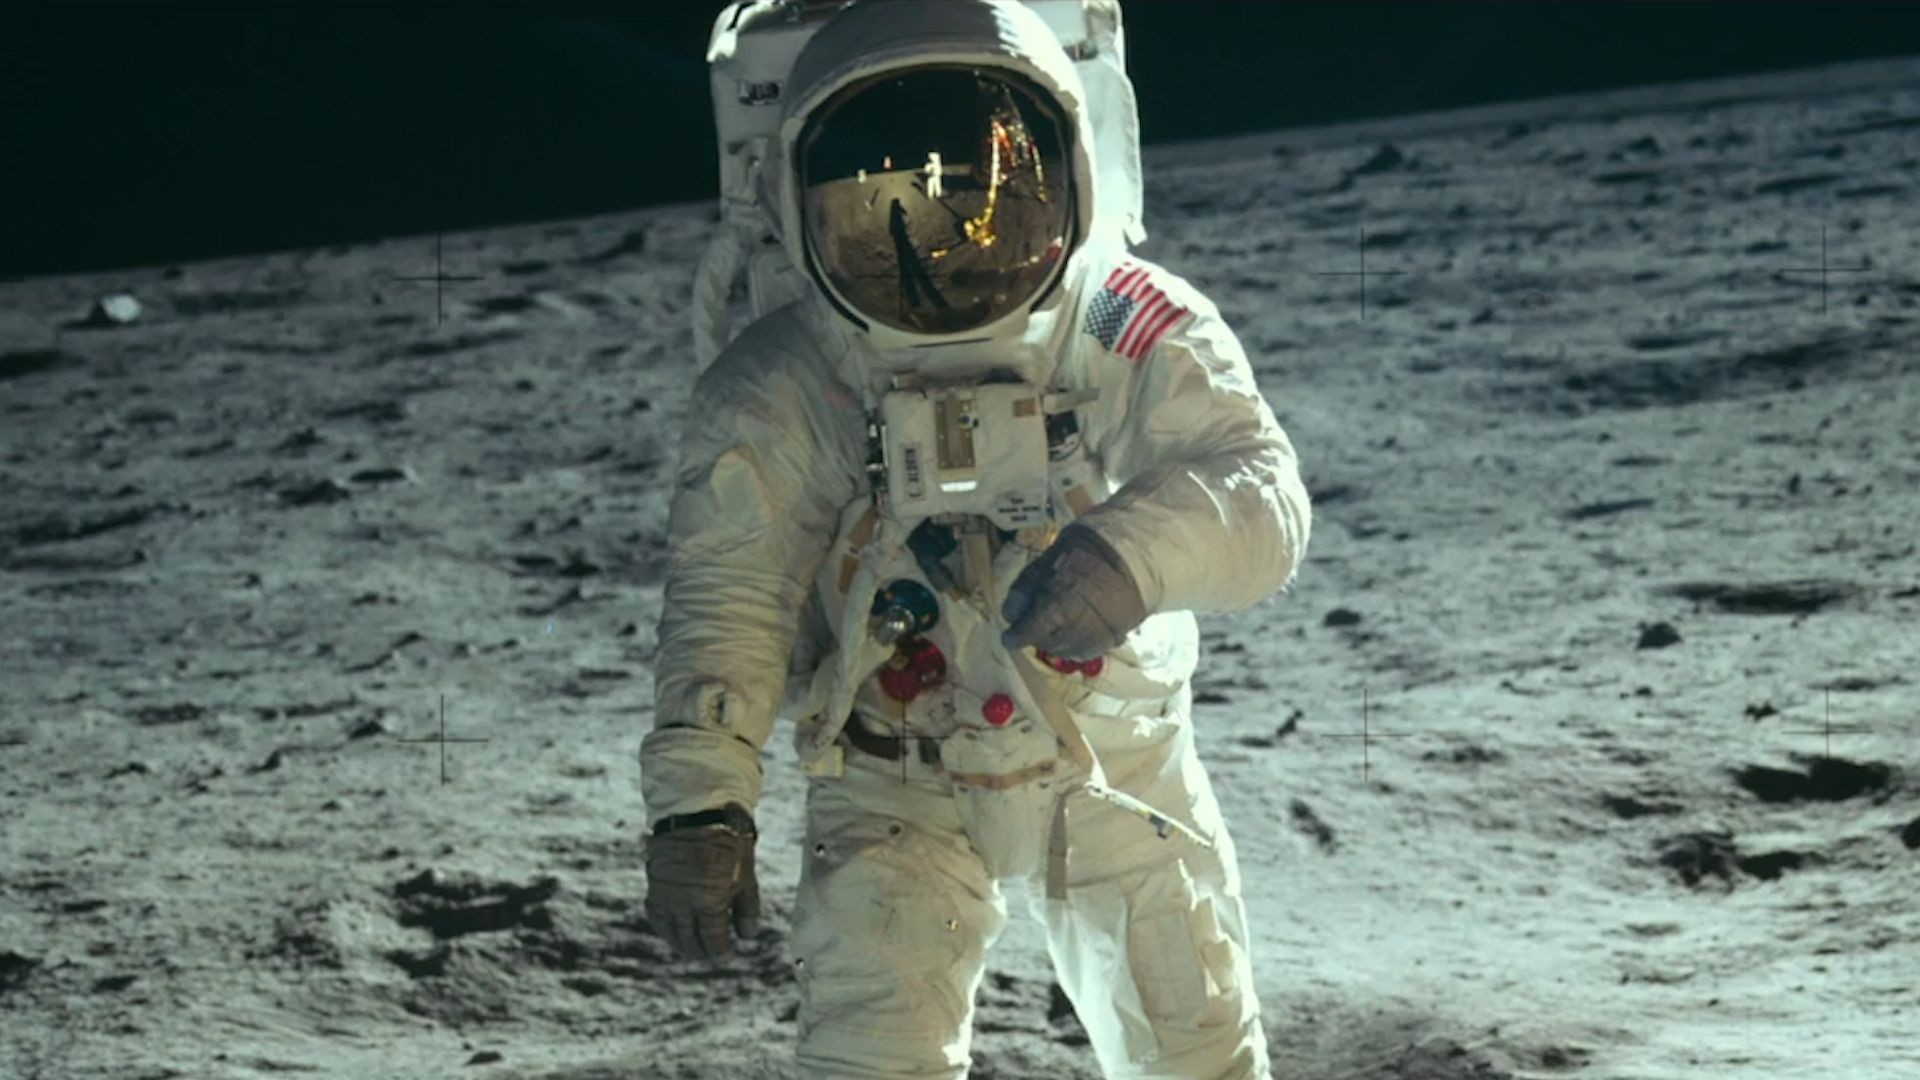 Desembarque na Lua durante a Apollo 11 (Foto: Divulgação/ NASA )